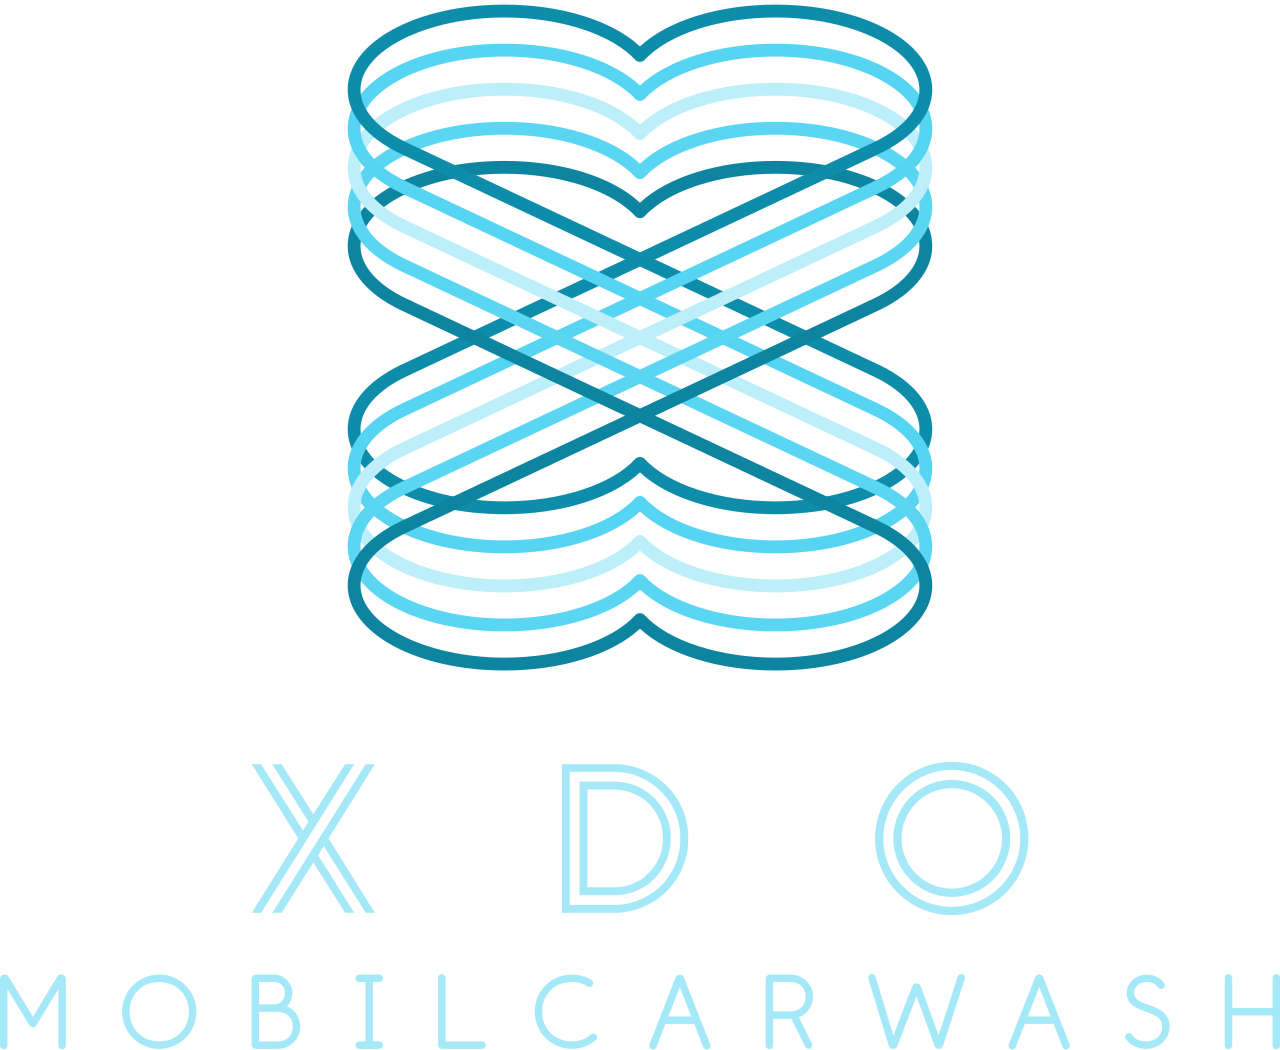 XDO's logo